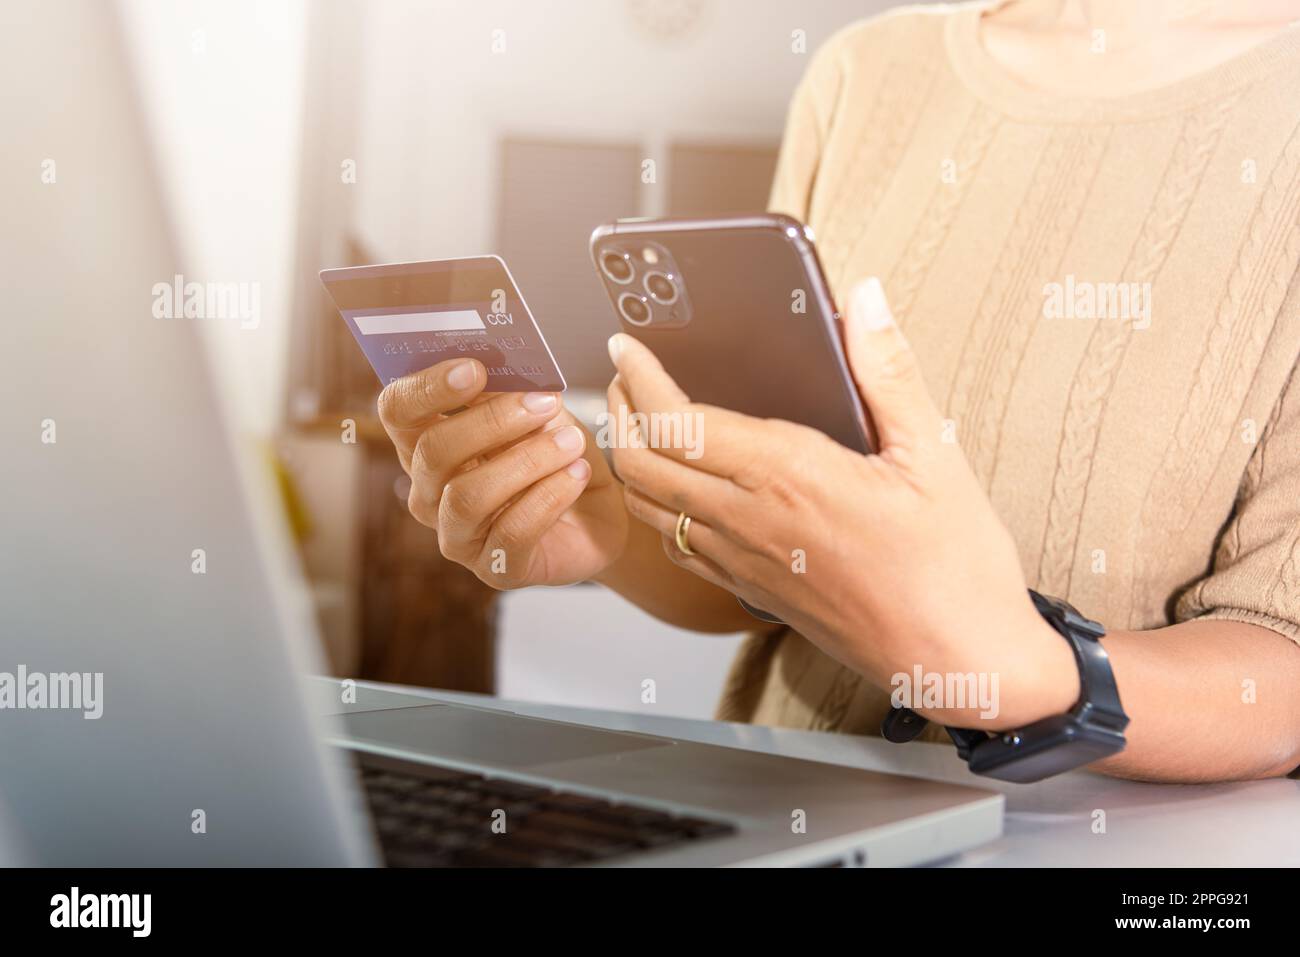 Les femmes s'inscrivent via des cartes de crédit sur leur téléphone mobile faire la sécurité de paiement numérique en ligne Banque D'Images